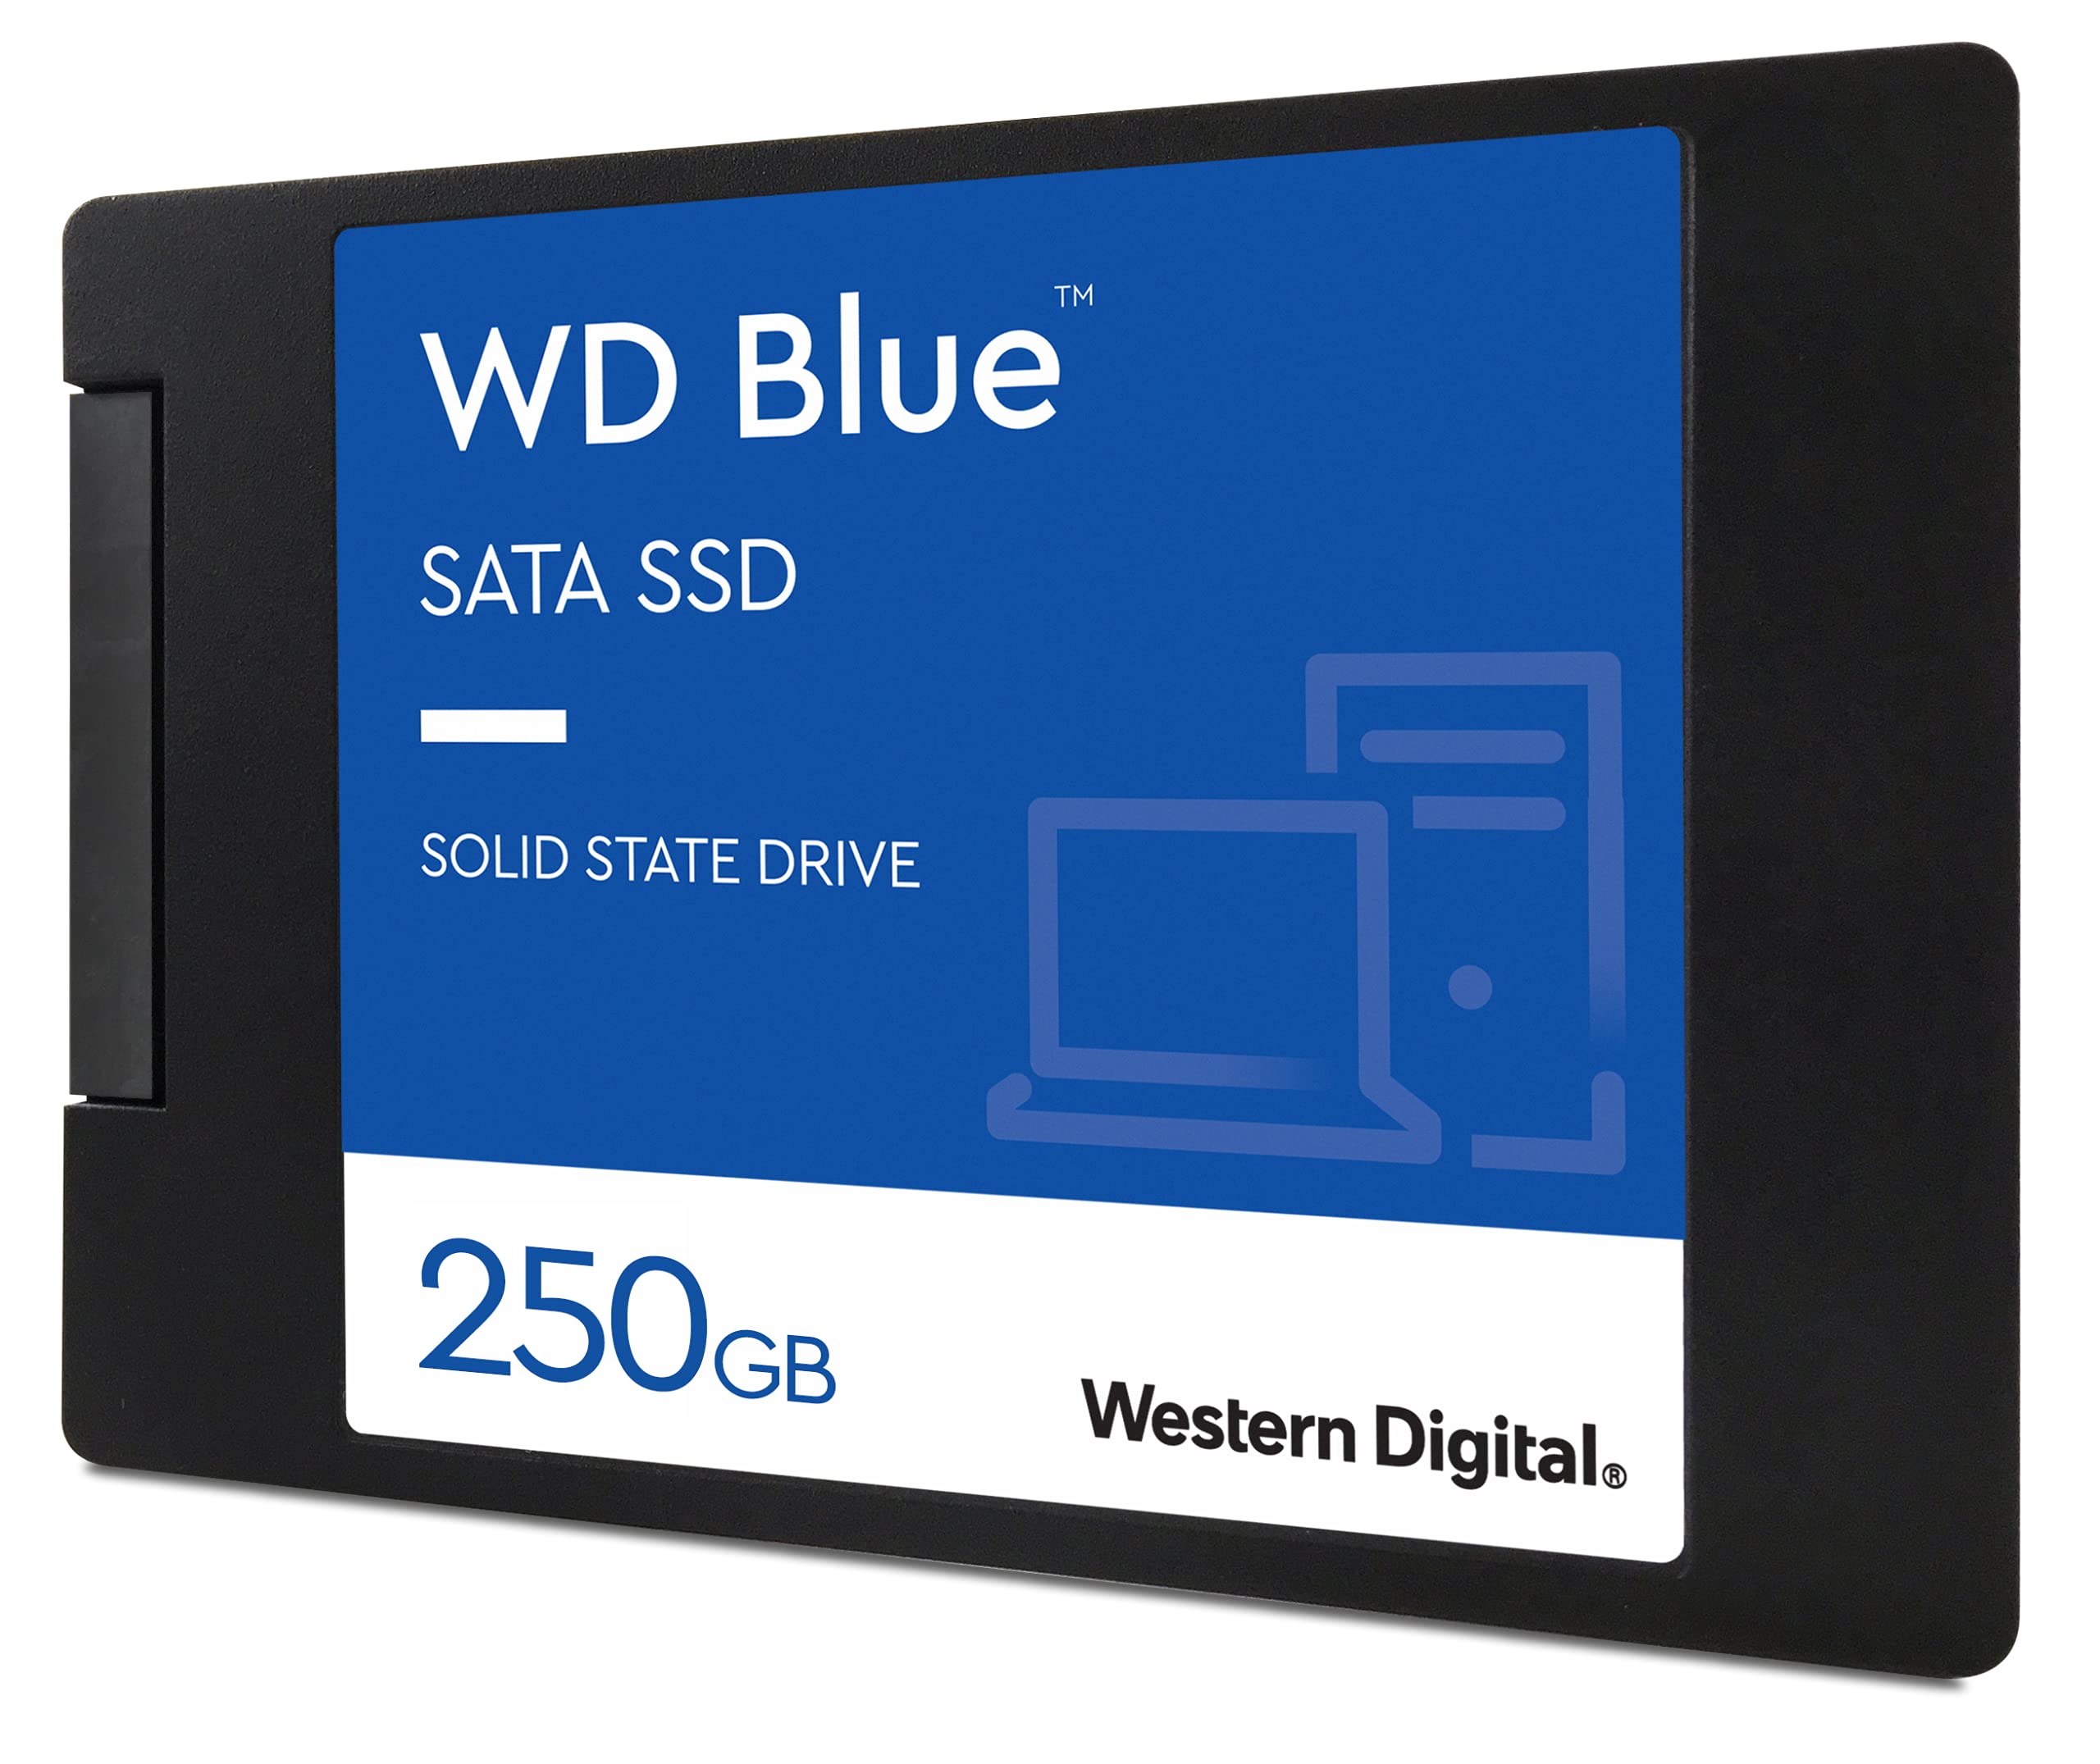 Western Digital 250GB WD Blue 3D NAND Internal PC SSD - SATA III 6 Gb/s, 2.5